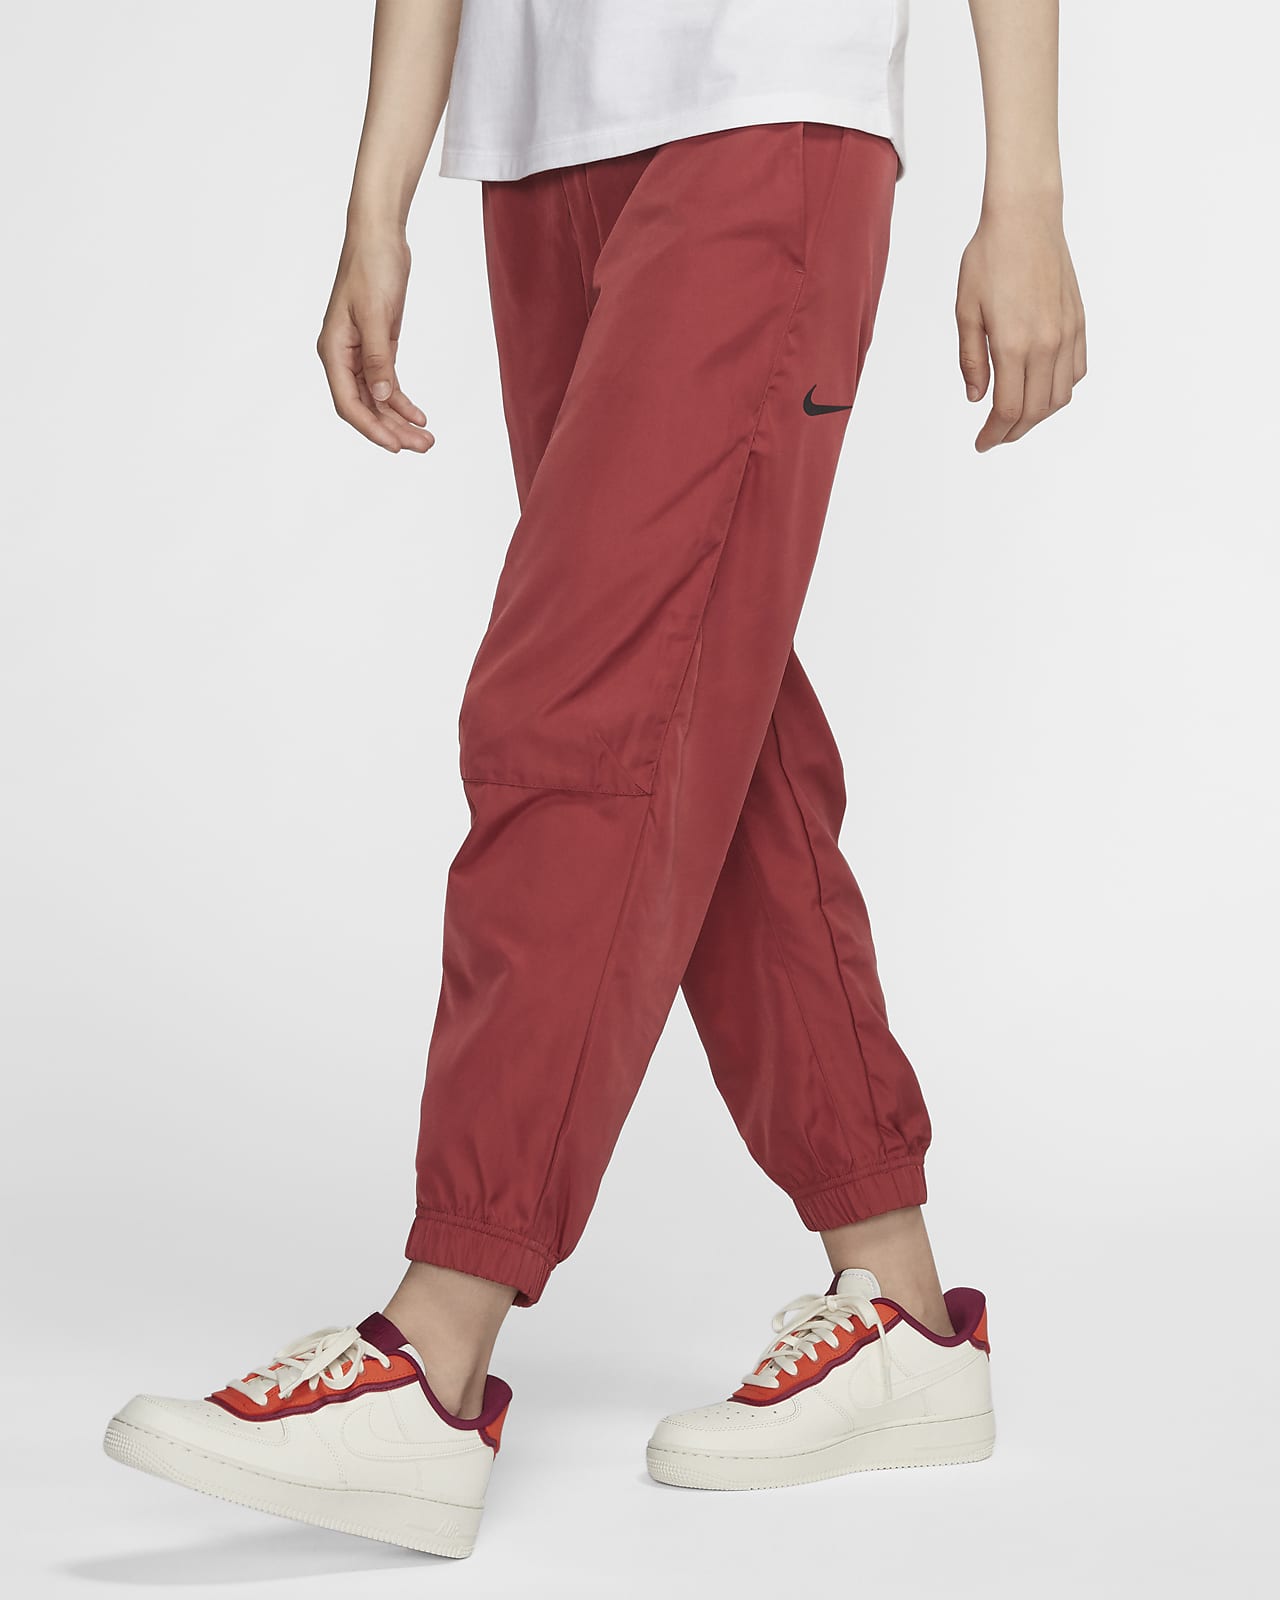 Nike Sportswear 女子梭织长裤